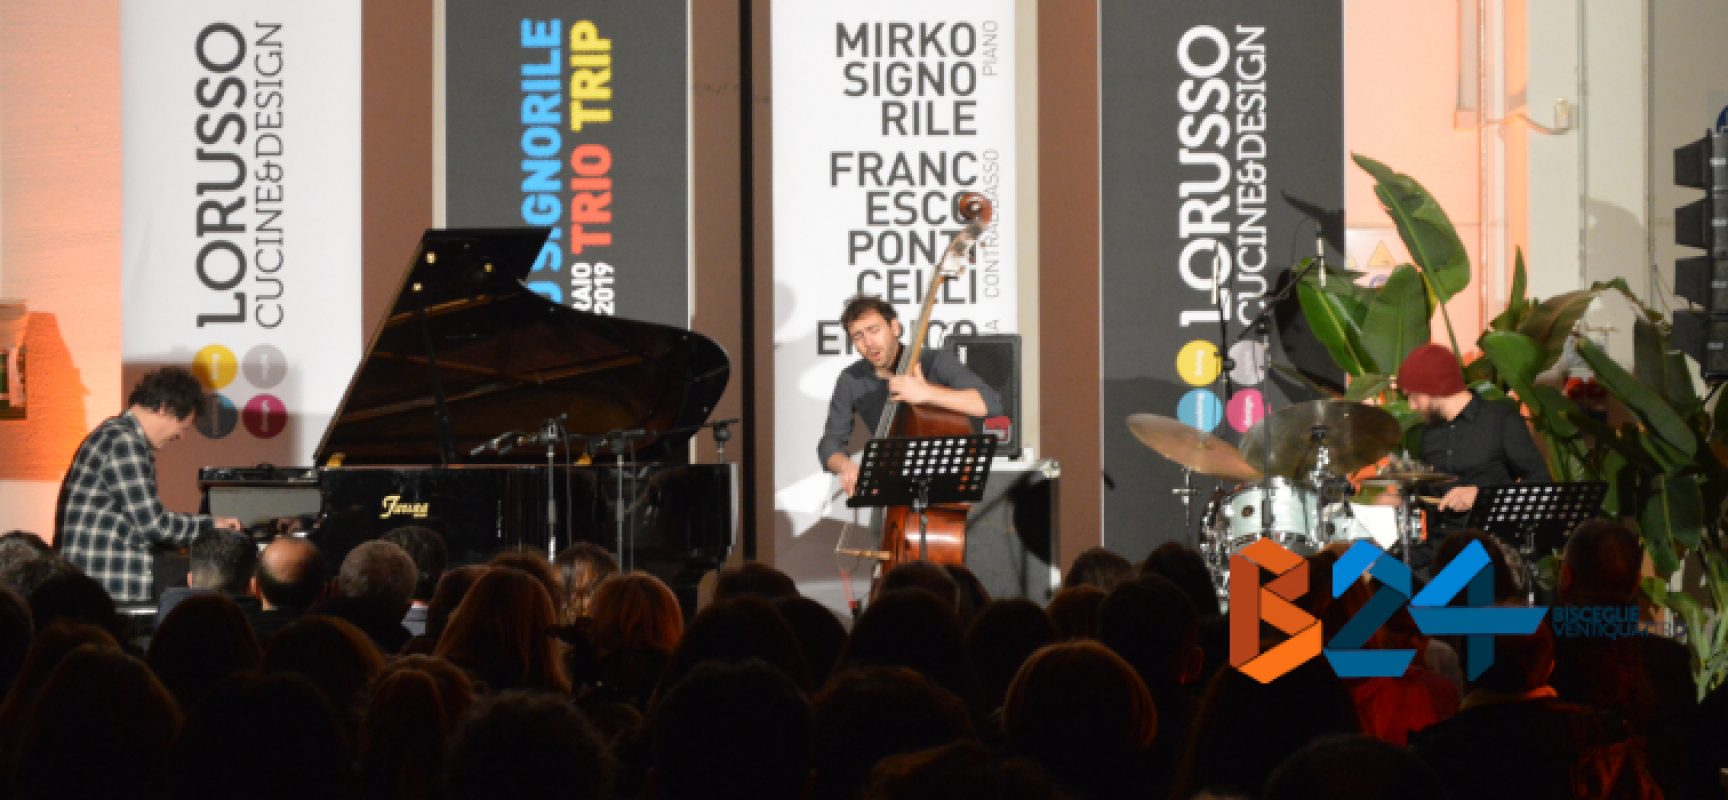 Musica e design, Mirko Signorile Trio Trip e ML22 per una serata da ricordare / FOTO